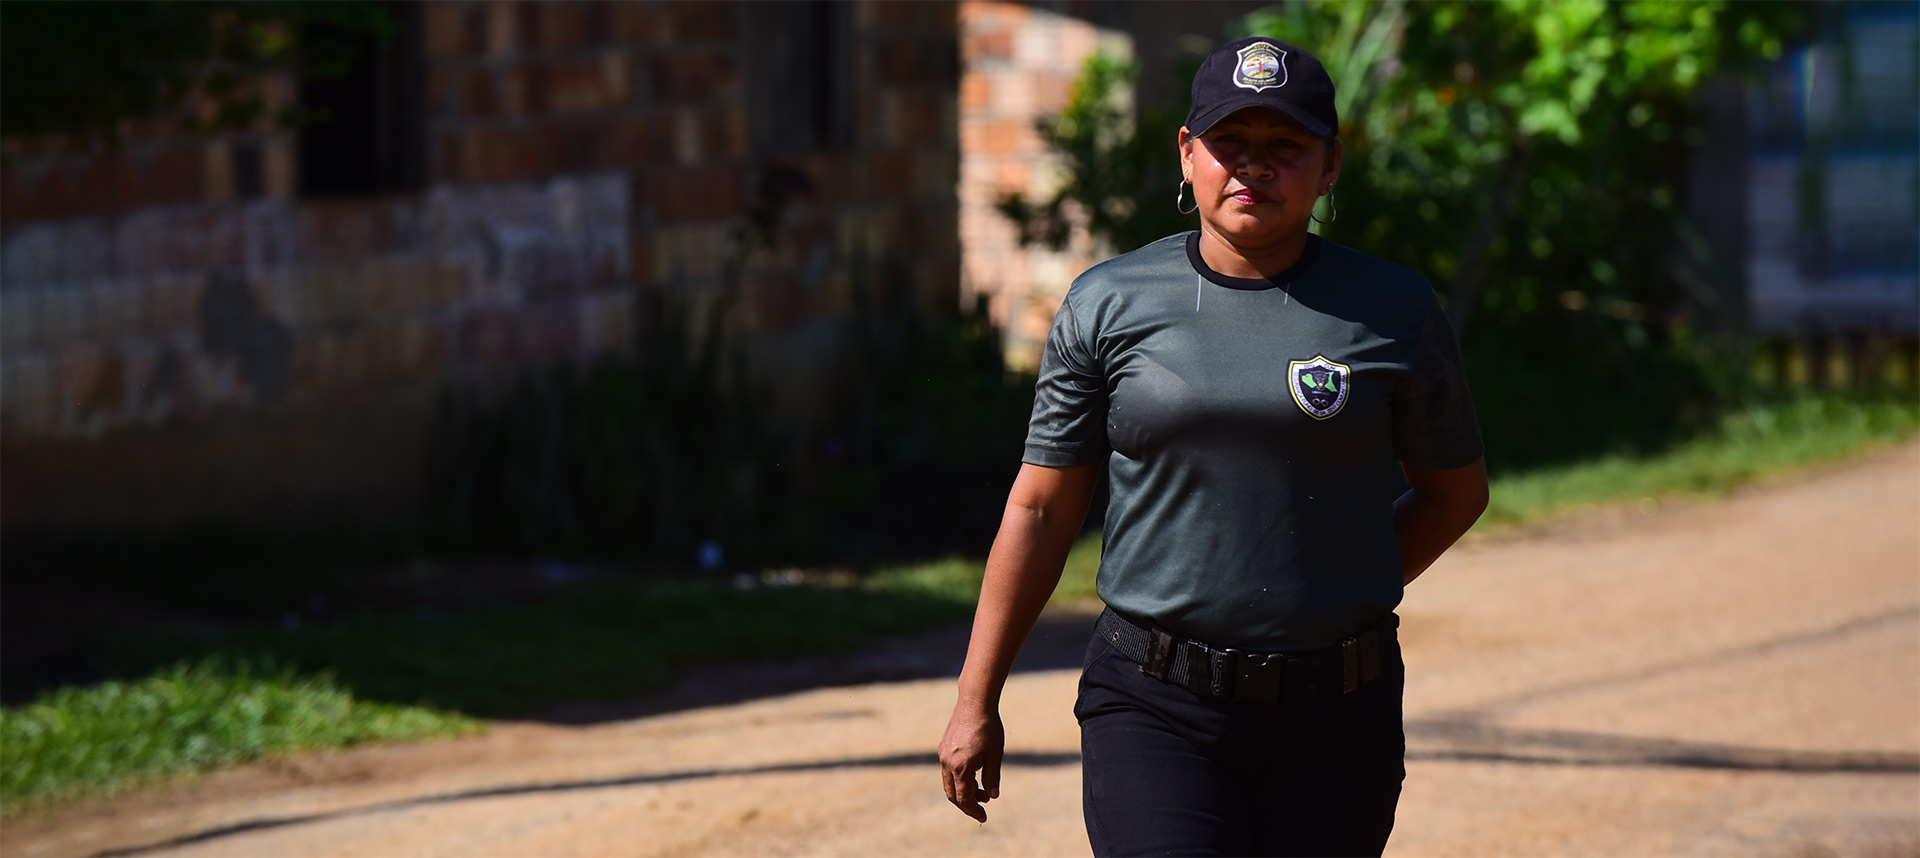 audiodescrição: fotografia colorida de uma das guardas indígenas; ela está uniformizada e caminha nas ruas da aldeia umariaçu